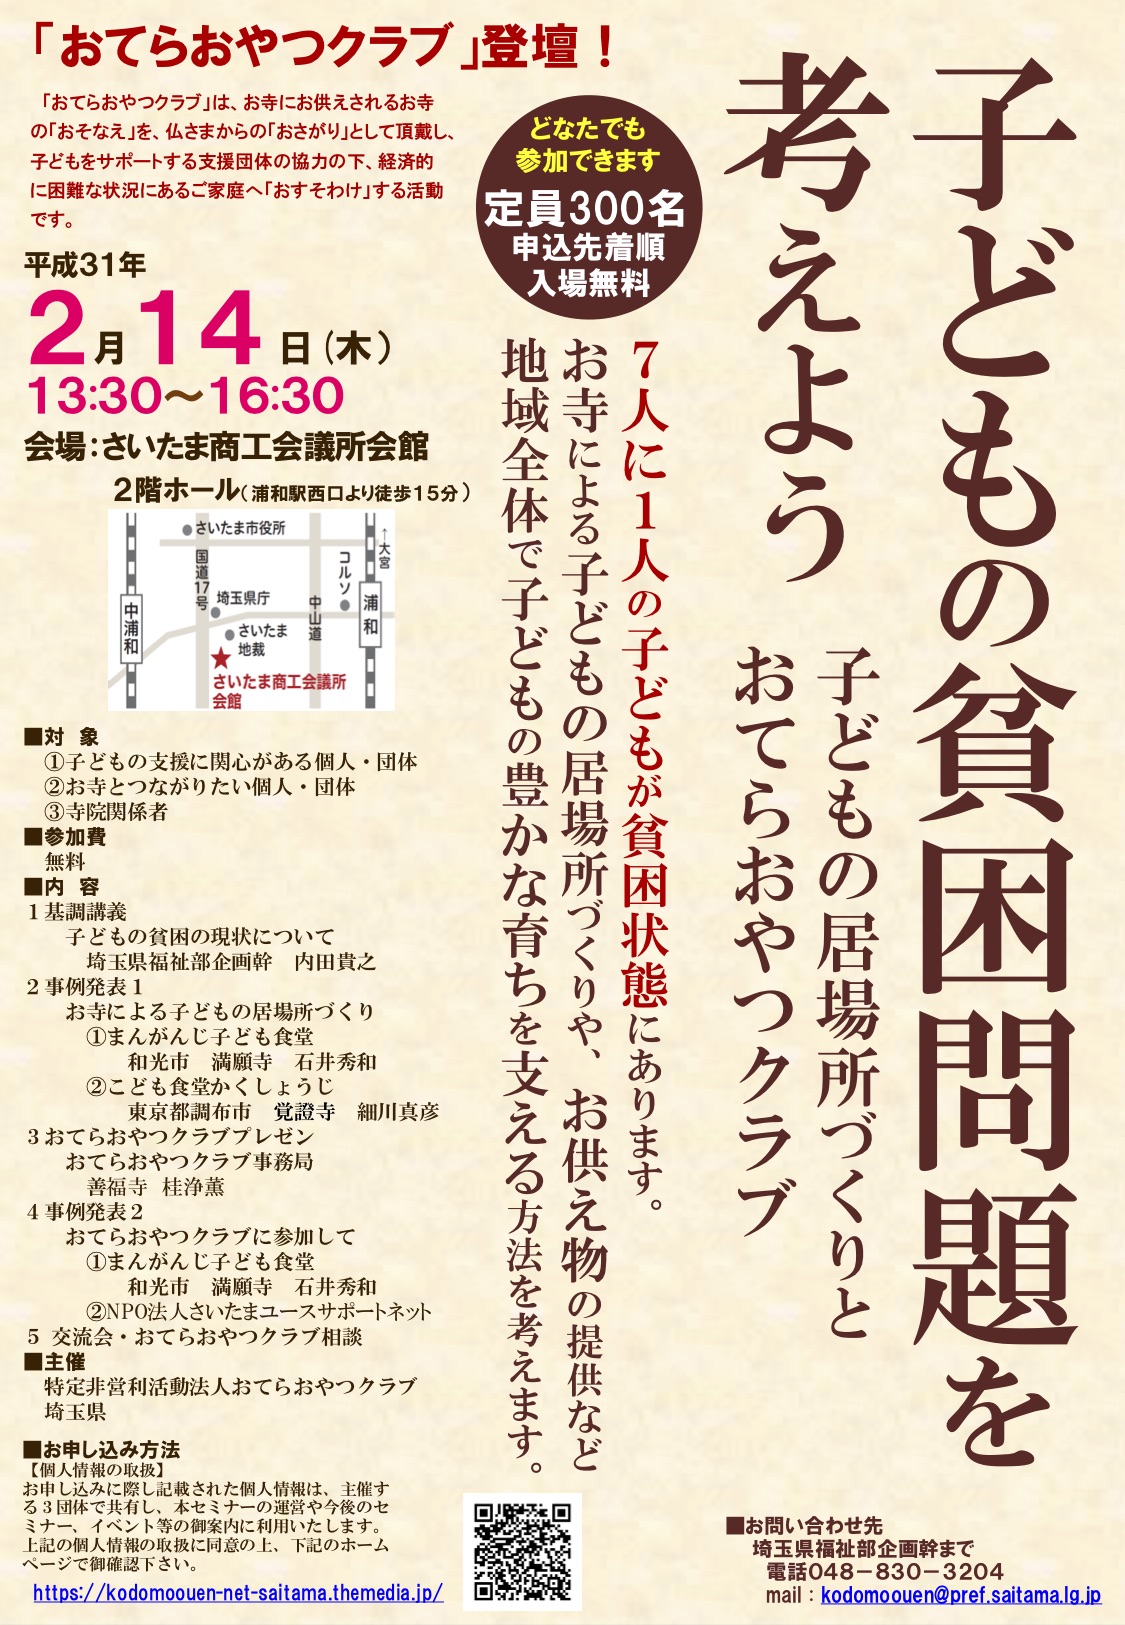 終了 2 14 埼玉県と共同主催 貧困問題を考える会 を開催 おてらおやつクラブ 子どもの貧困問題を解決する おそなえ おさがり おすそ わけ の活動